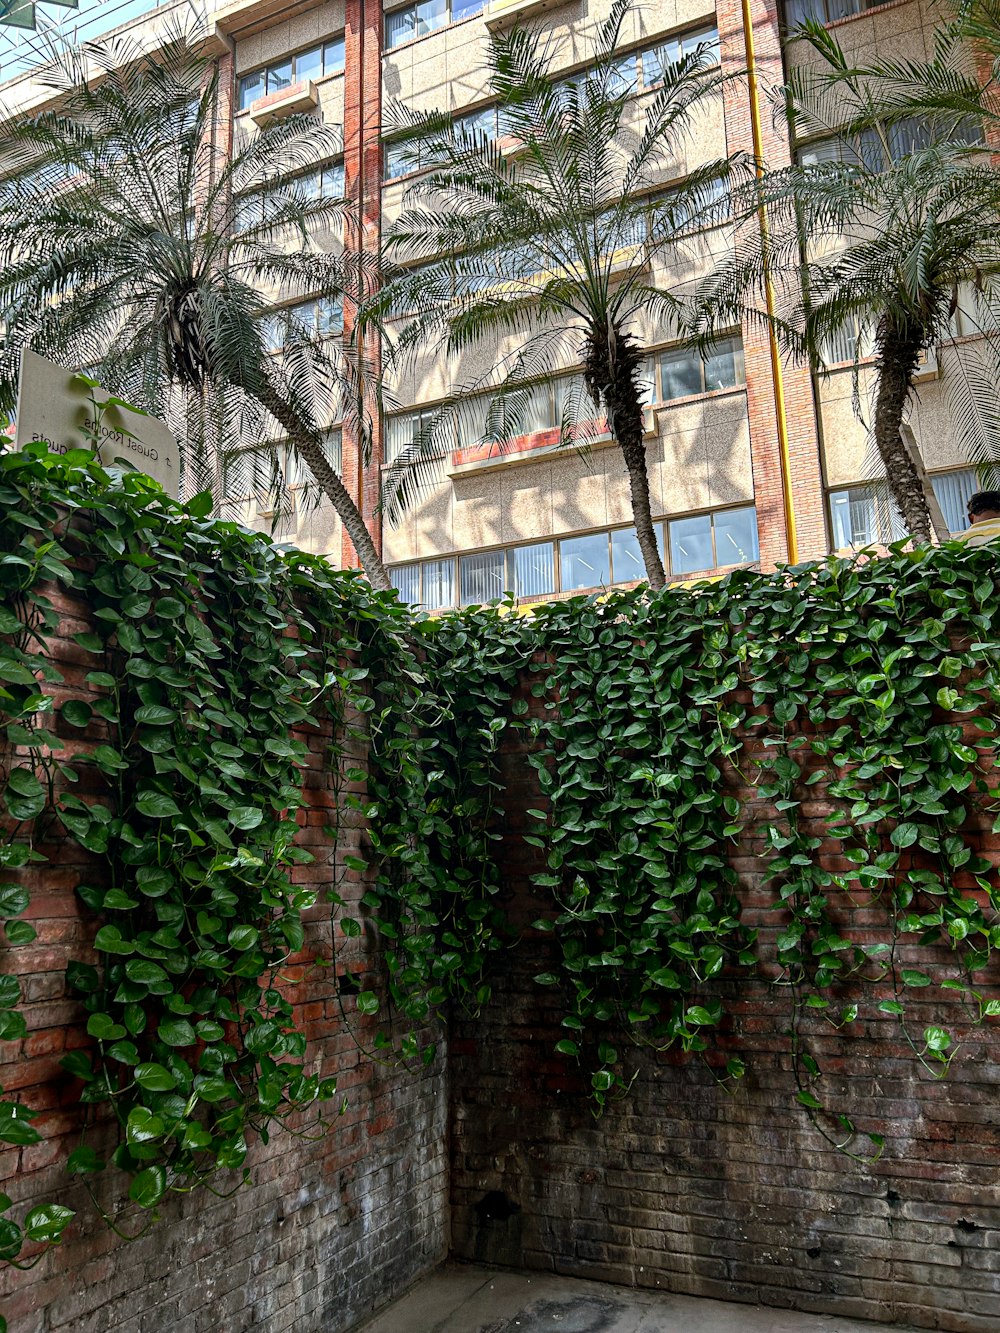 고층 건물 옆에 녹색 식물로 덮인 벽돌 벽